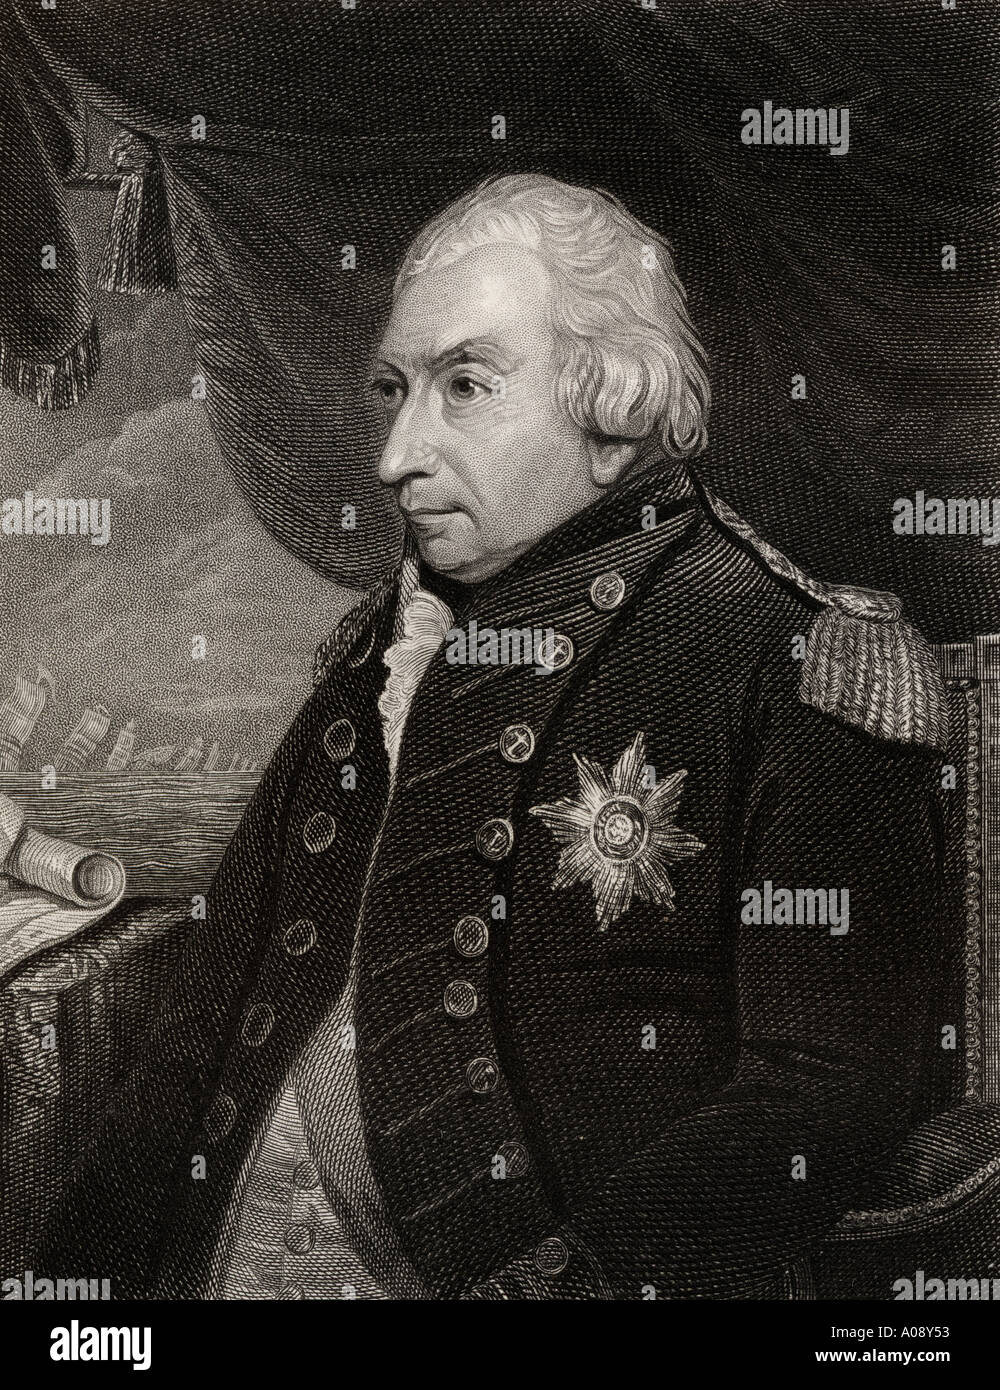 Admiral der Flotte John Jervis, 1st Earl of St. Vincent, 1735 - 1823. Admiral in der britischen Royal Navy und Mitglied des Parlaments. Stockfoto